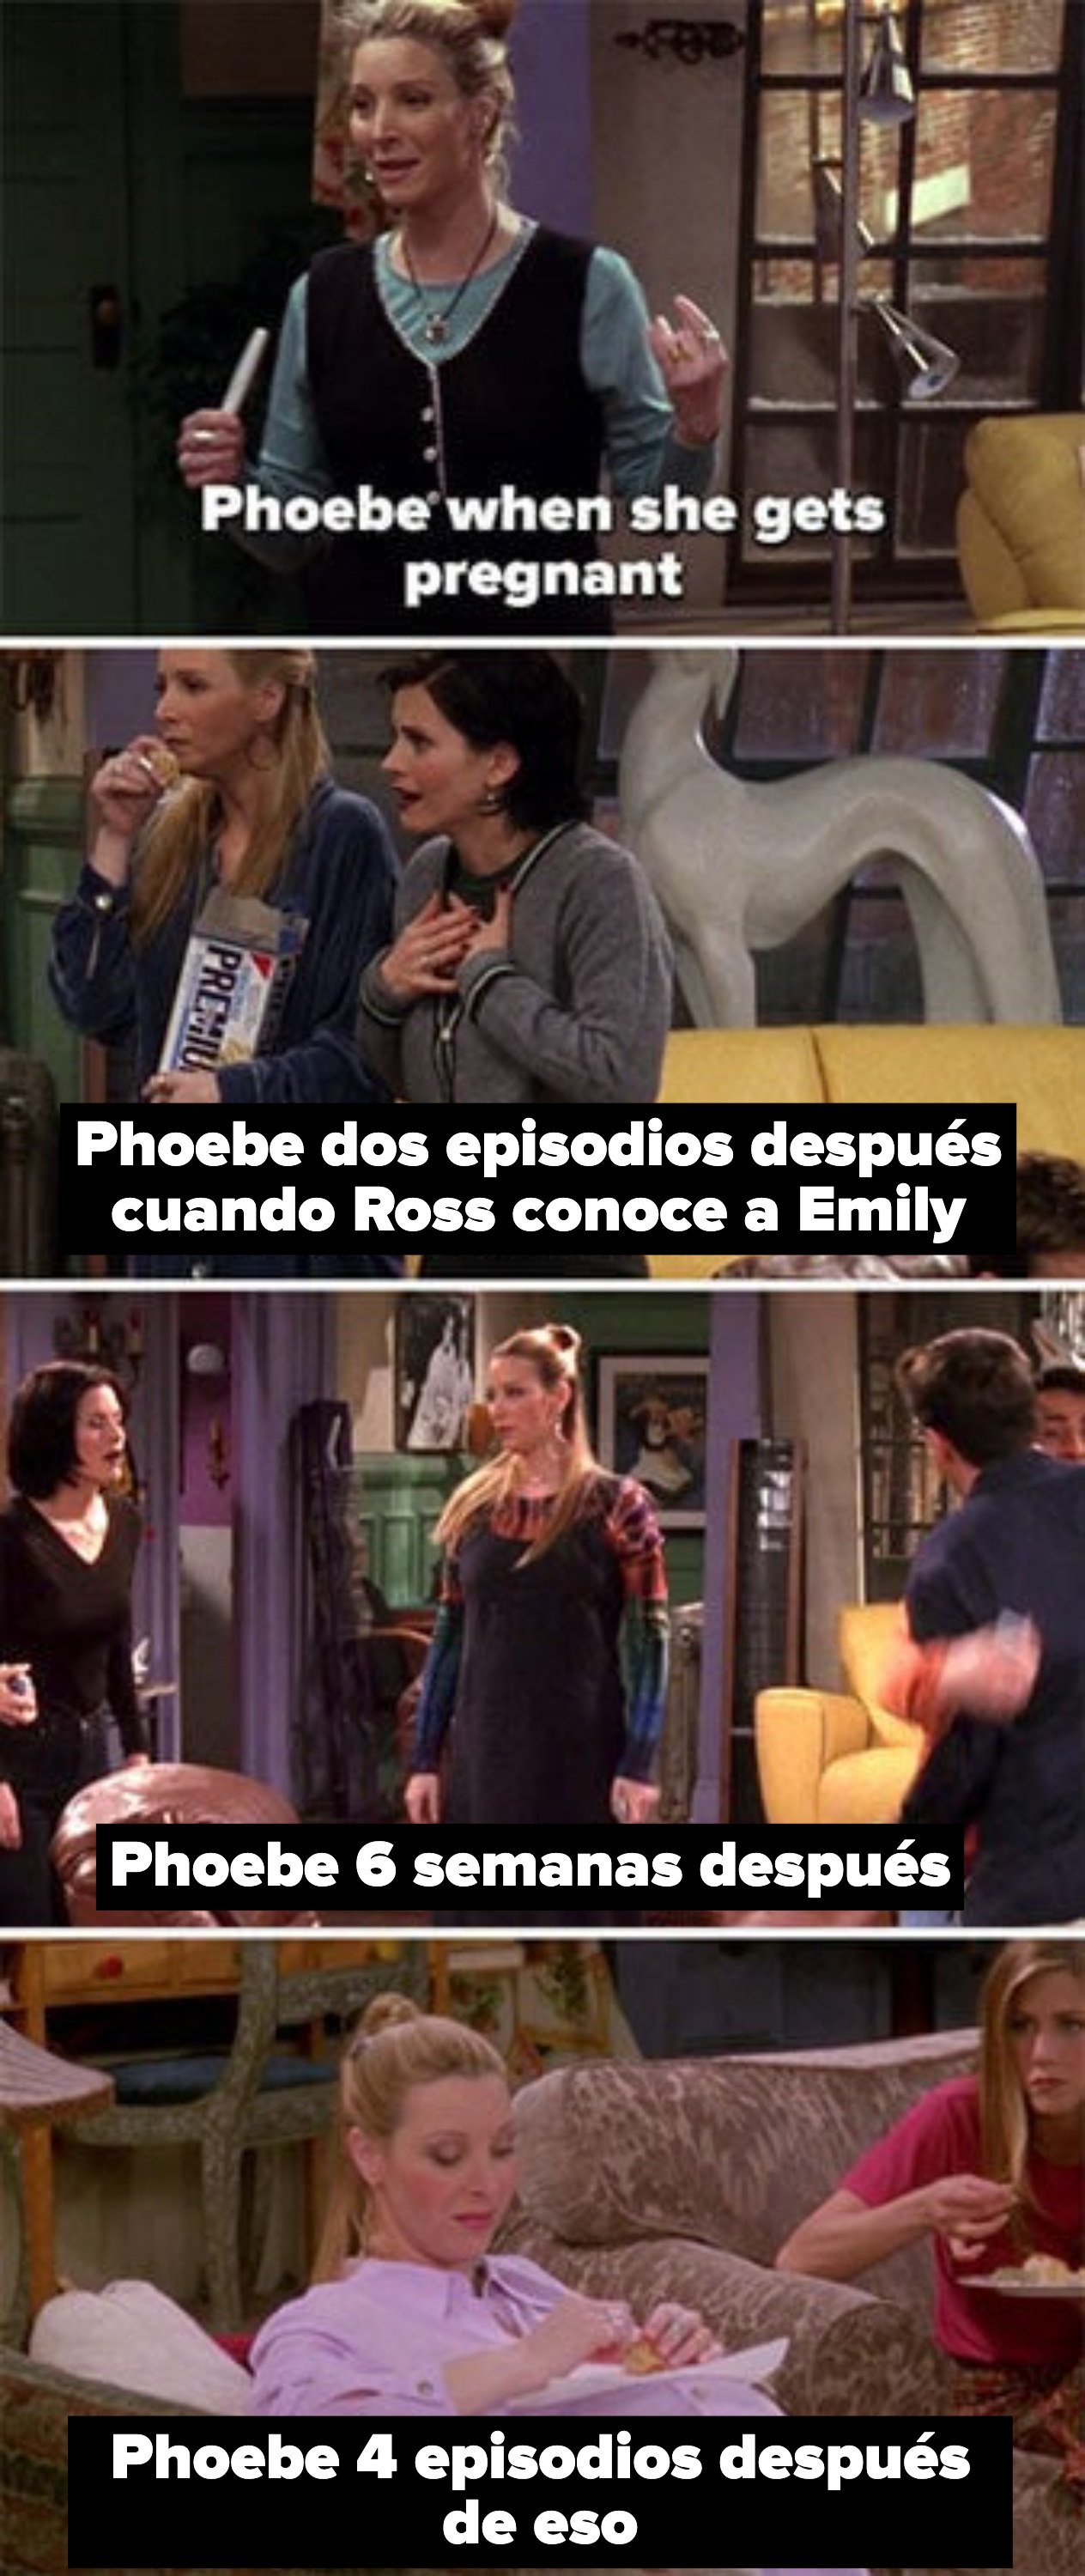 Phoebe queda embarazada, luego se ve súper embarazada 6 semanas después, e incluso más embarazada solo unos pocos episodios después de eso.